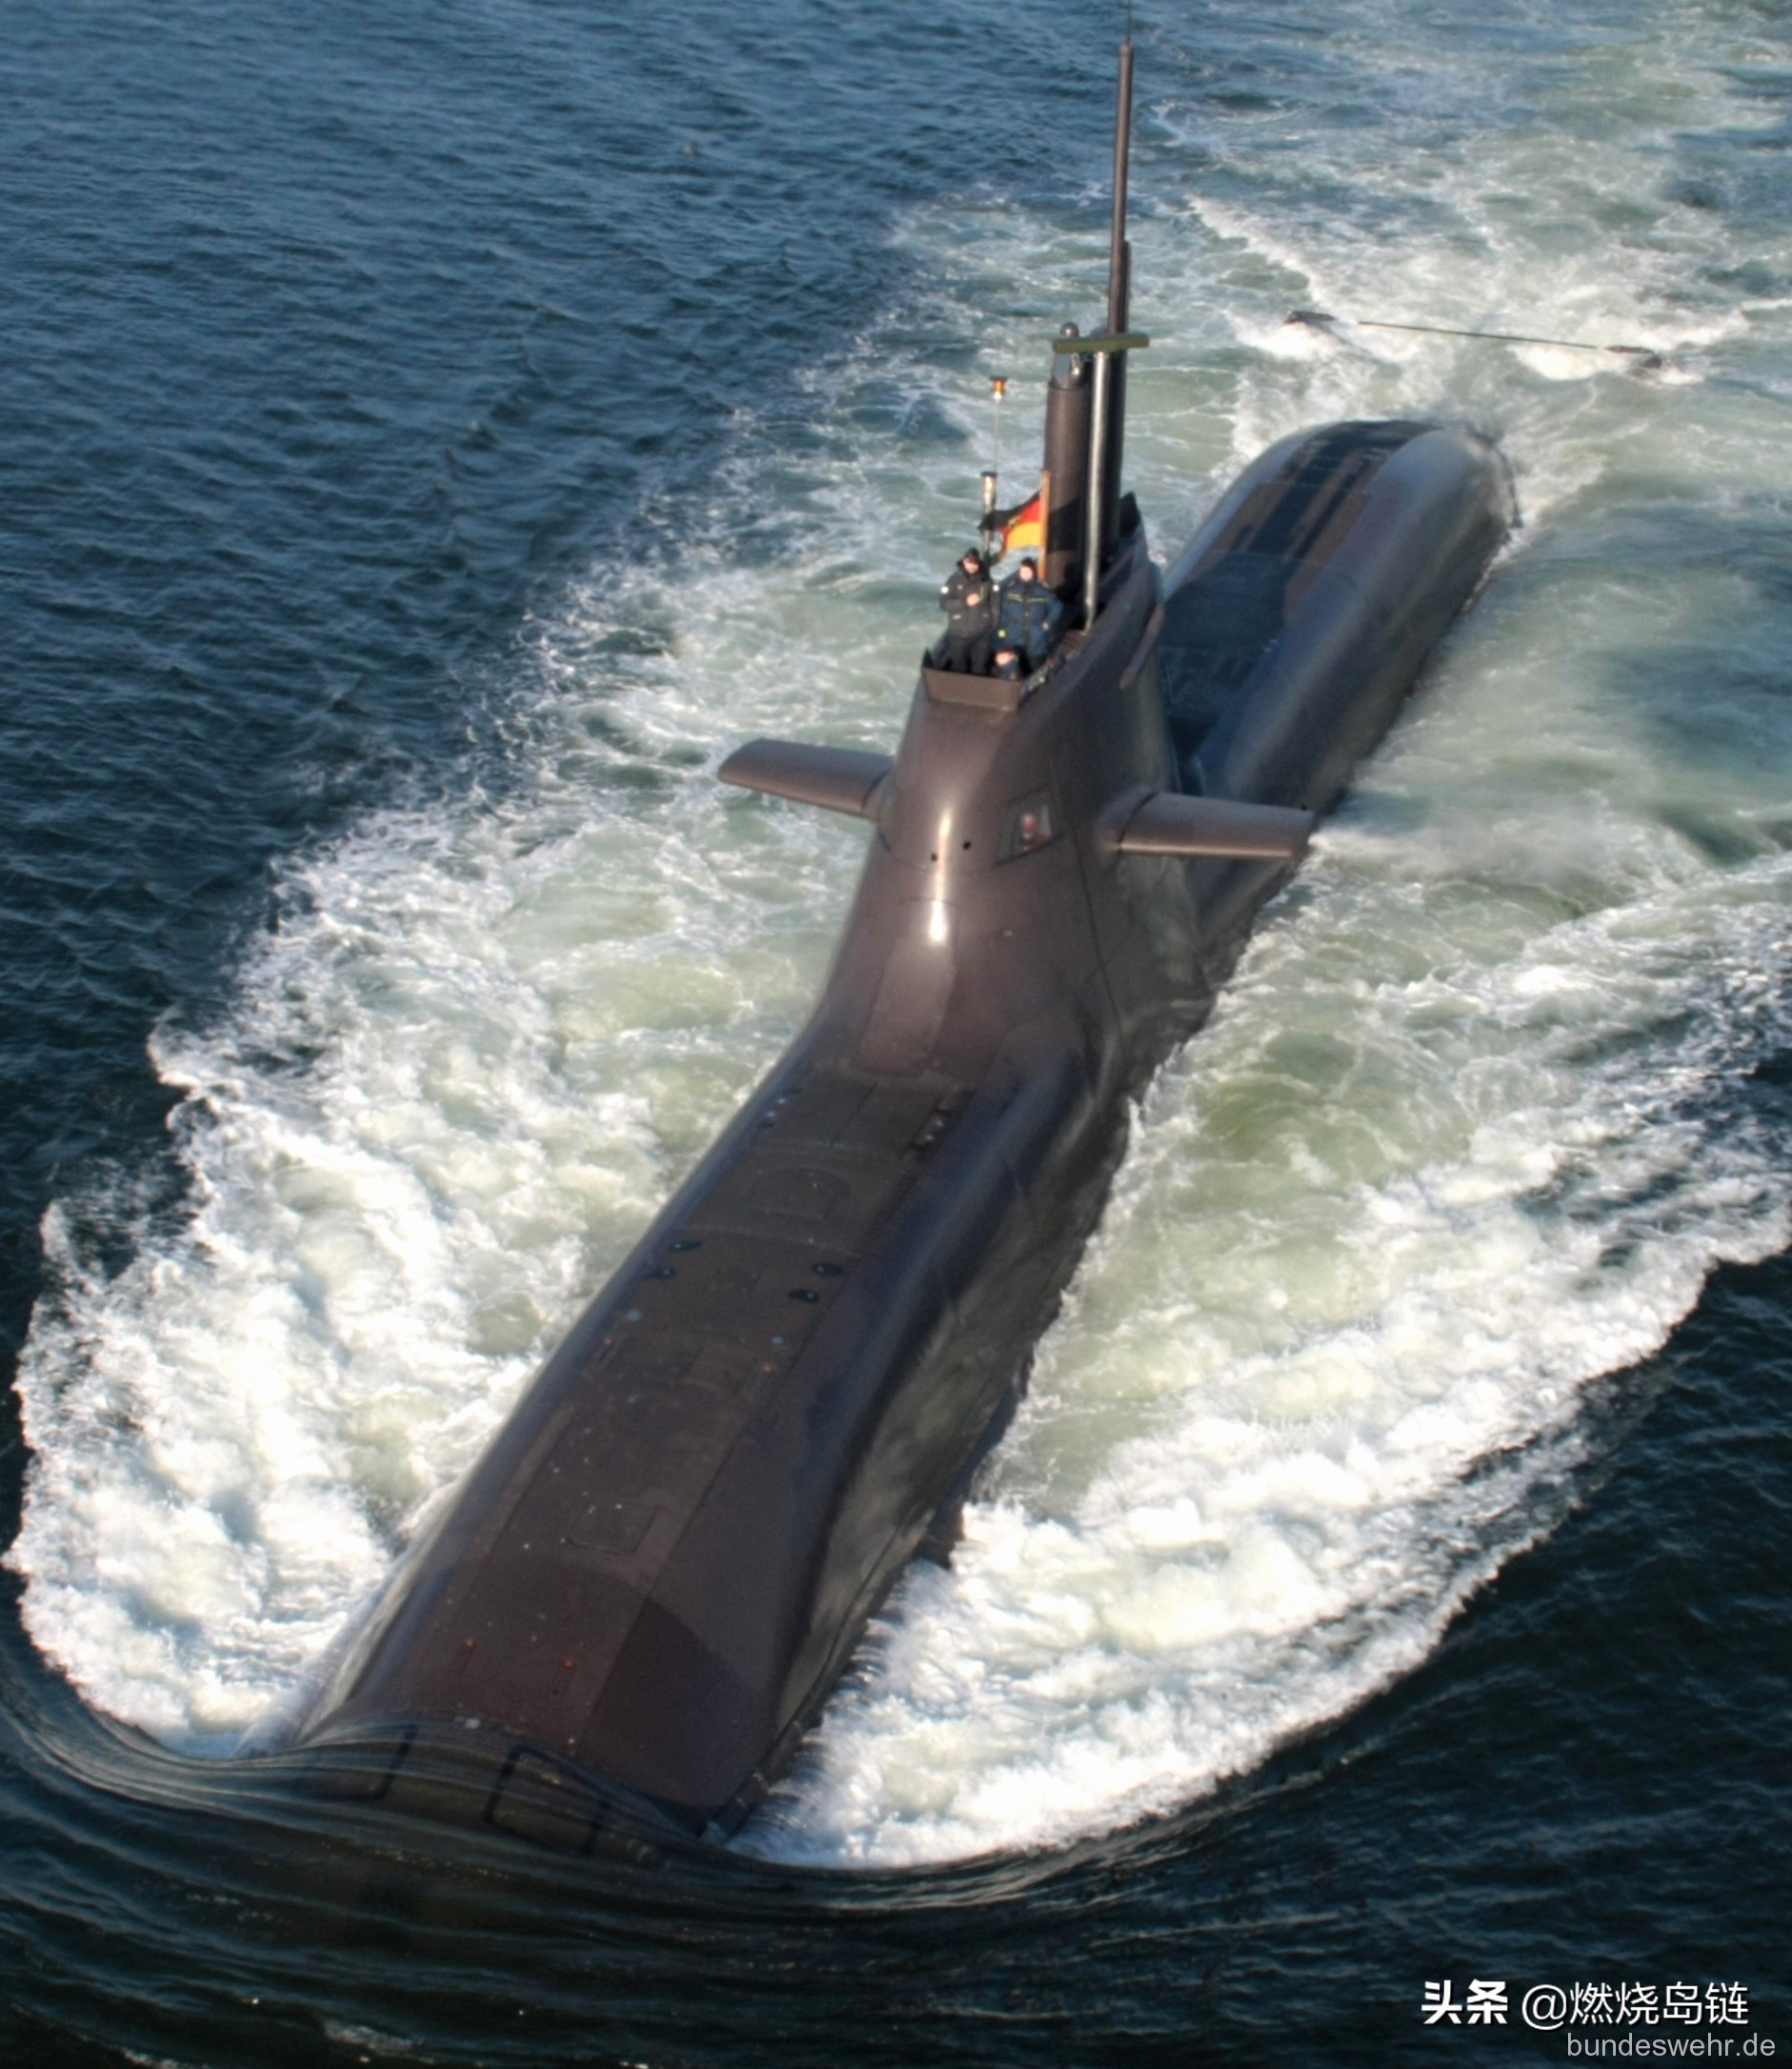 德国现代潜艇技术的结晶——212/212a型常规潜艇